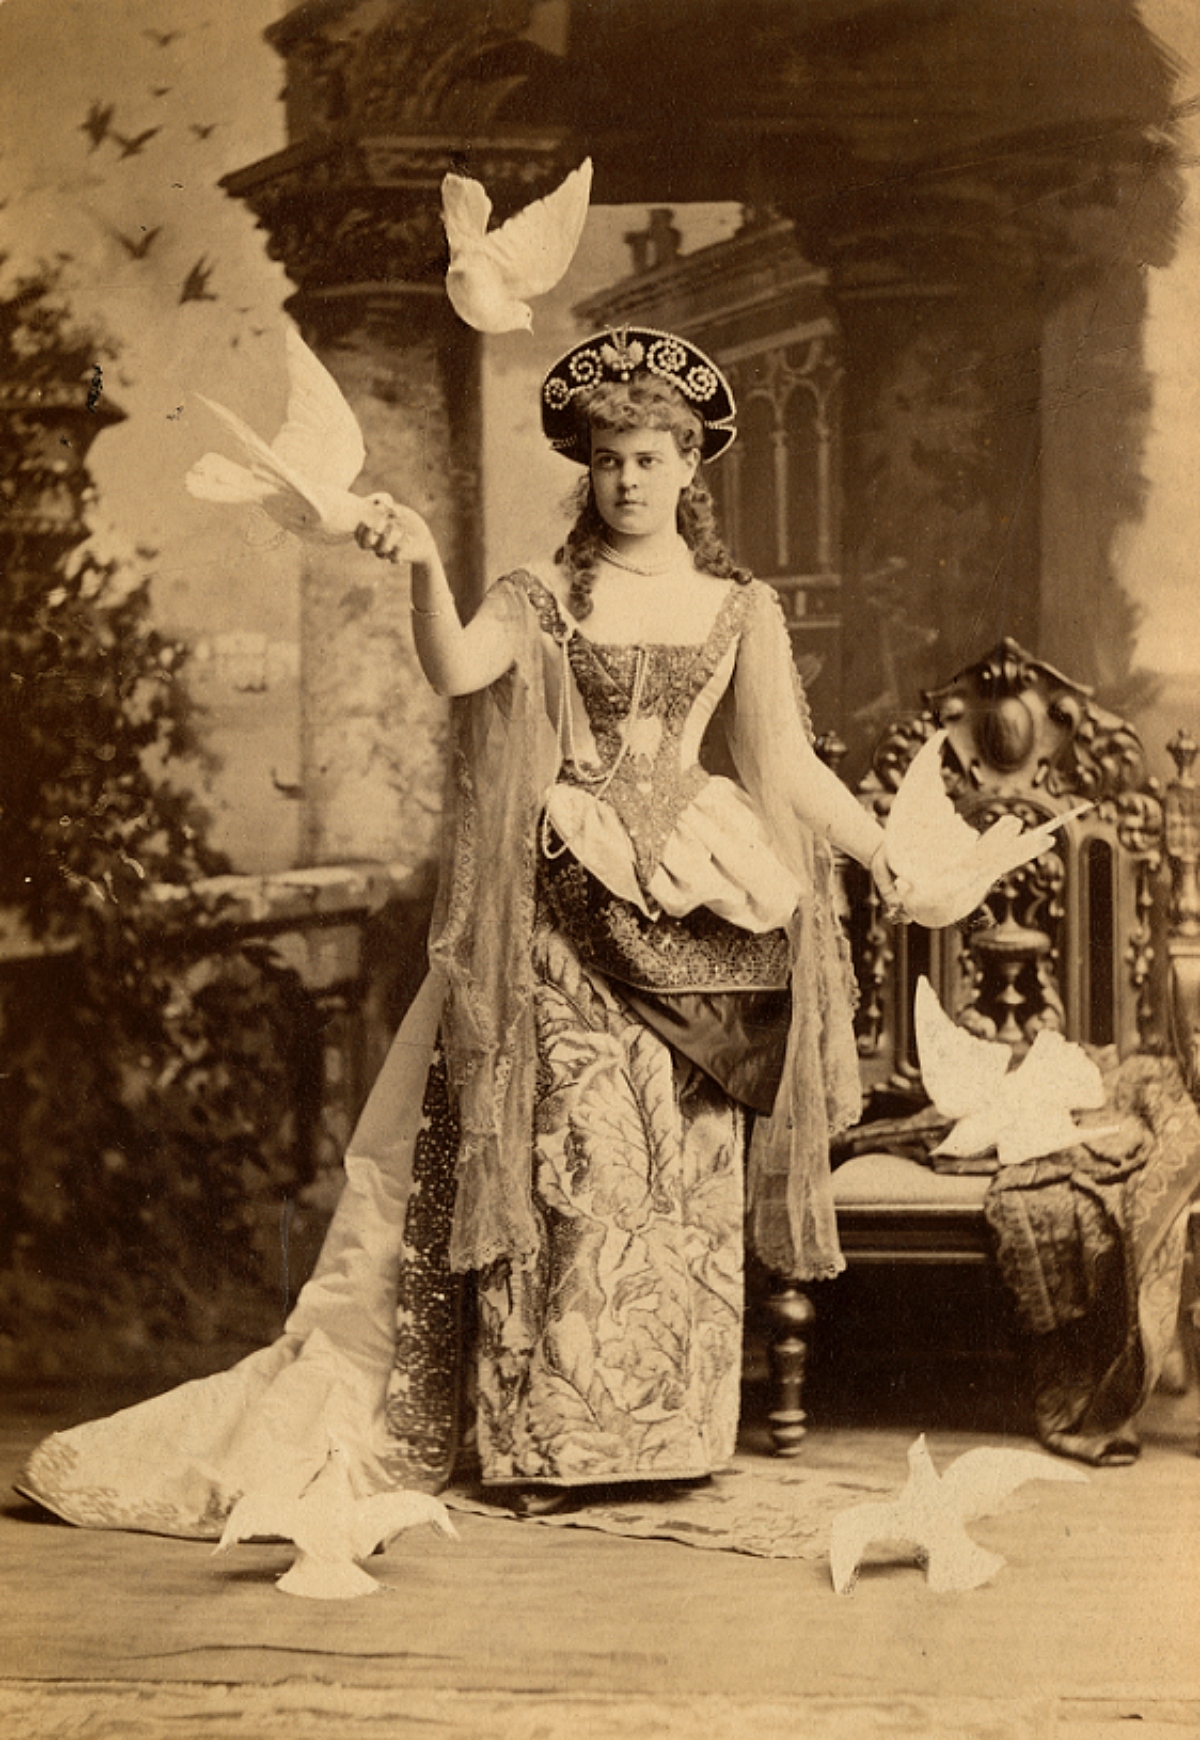 Alva Vanderbilt at the 1883 Vanderbilt Ball